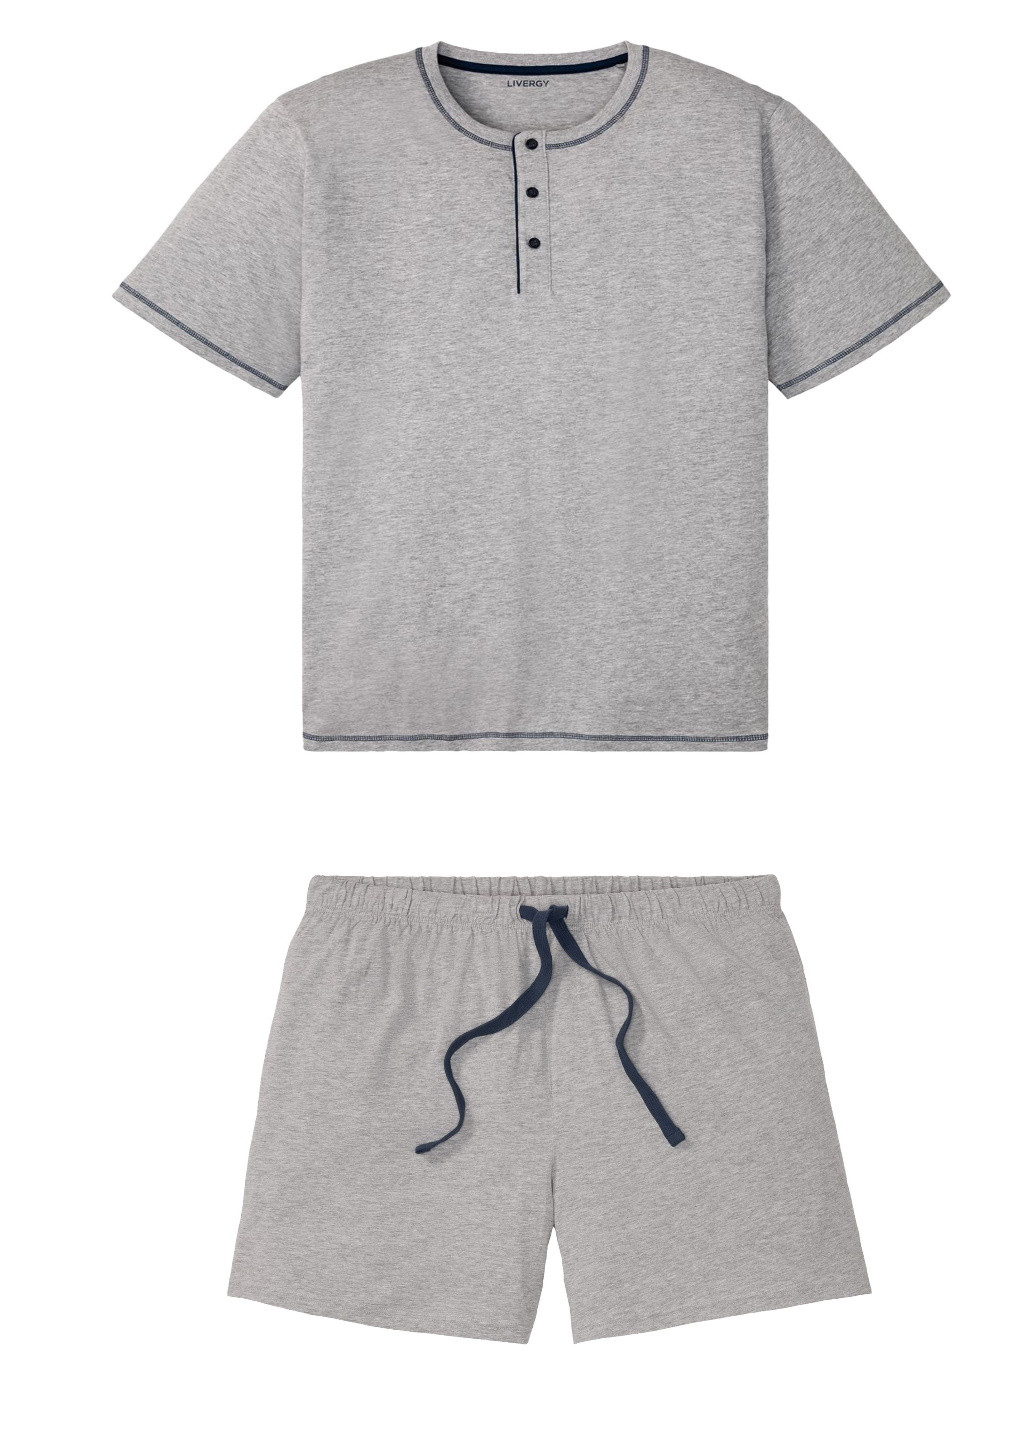 Пижама (футболка, шорты) Esmara футболка + шорты меланж светло-серая домашняя трикотаж, хлопок